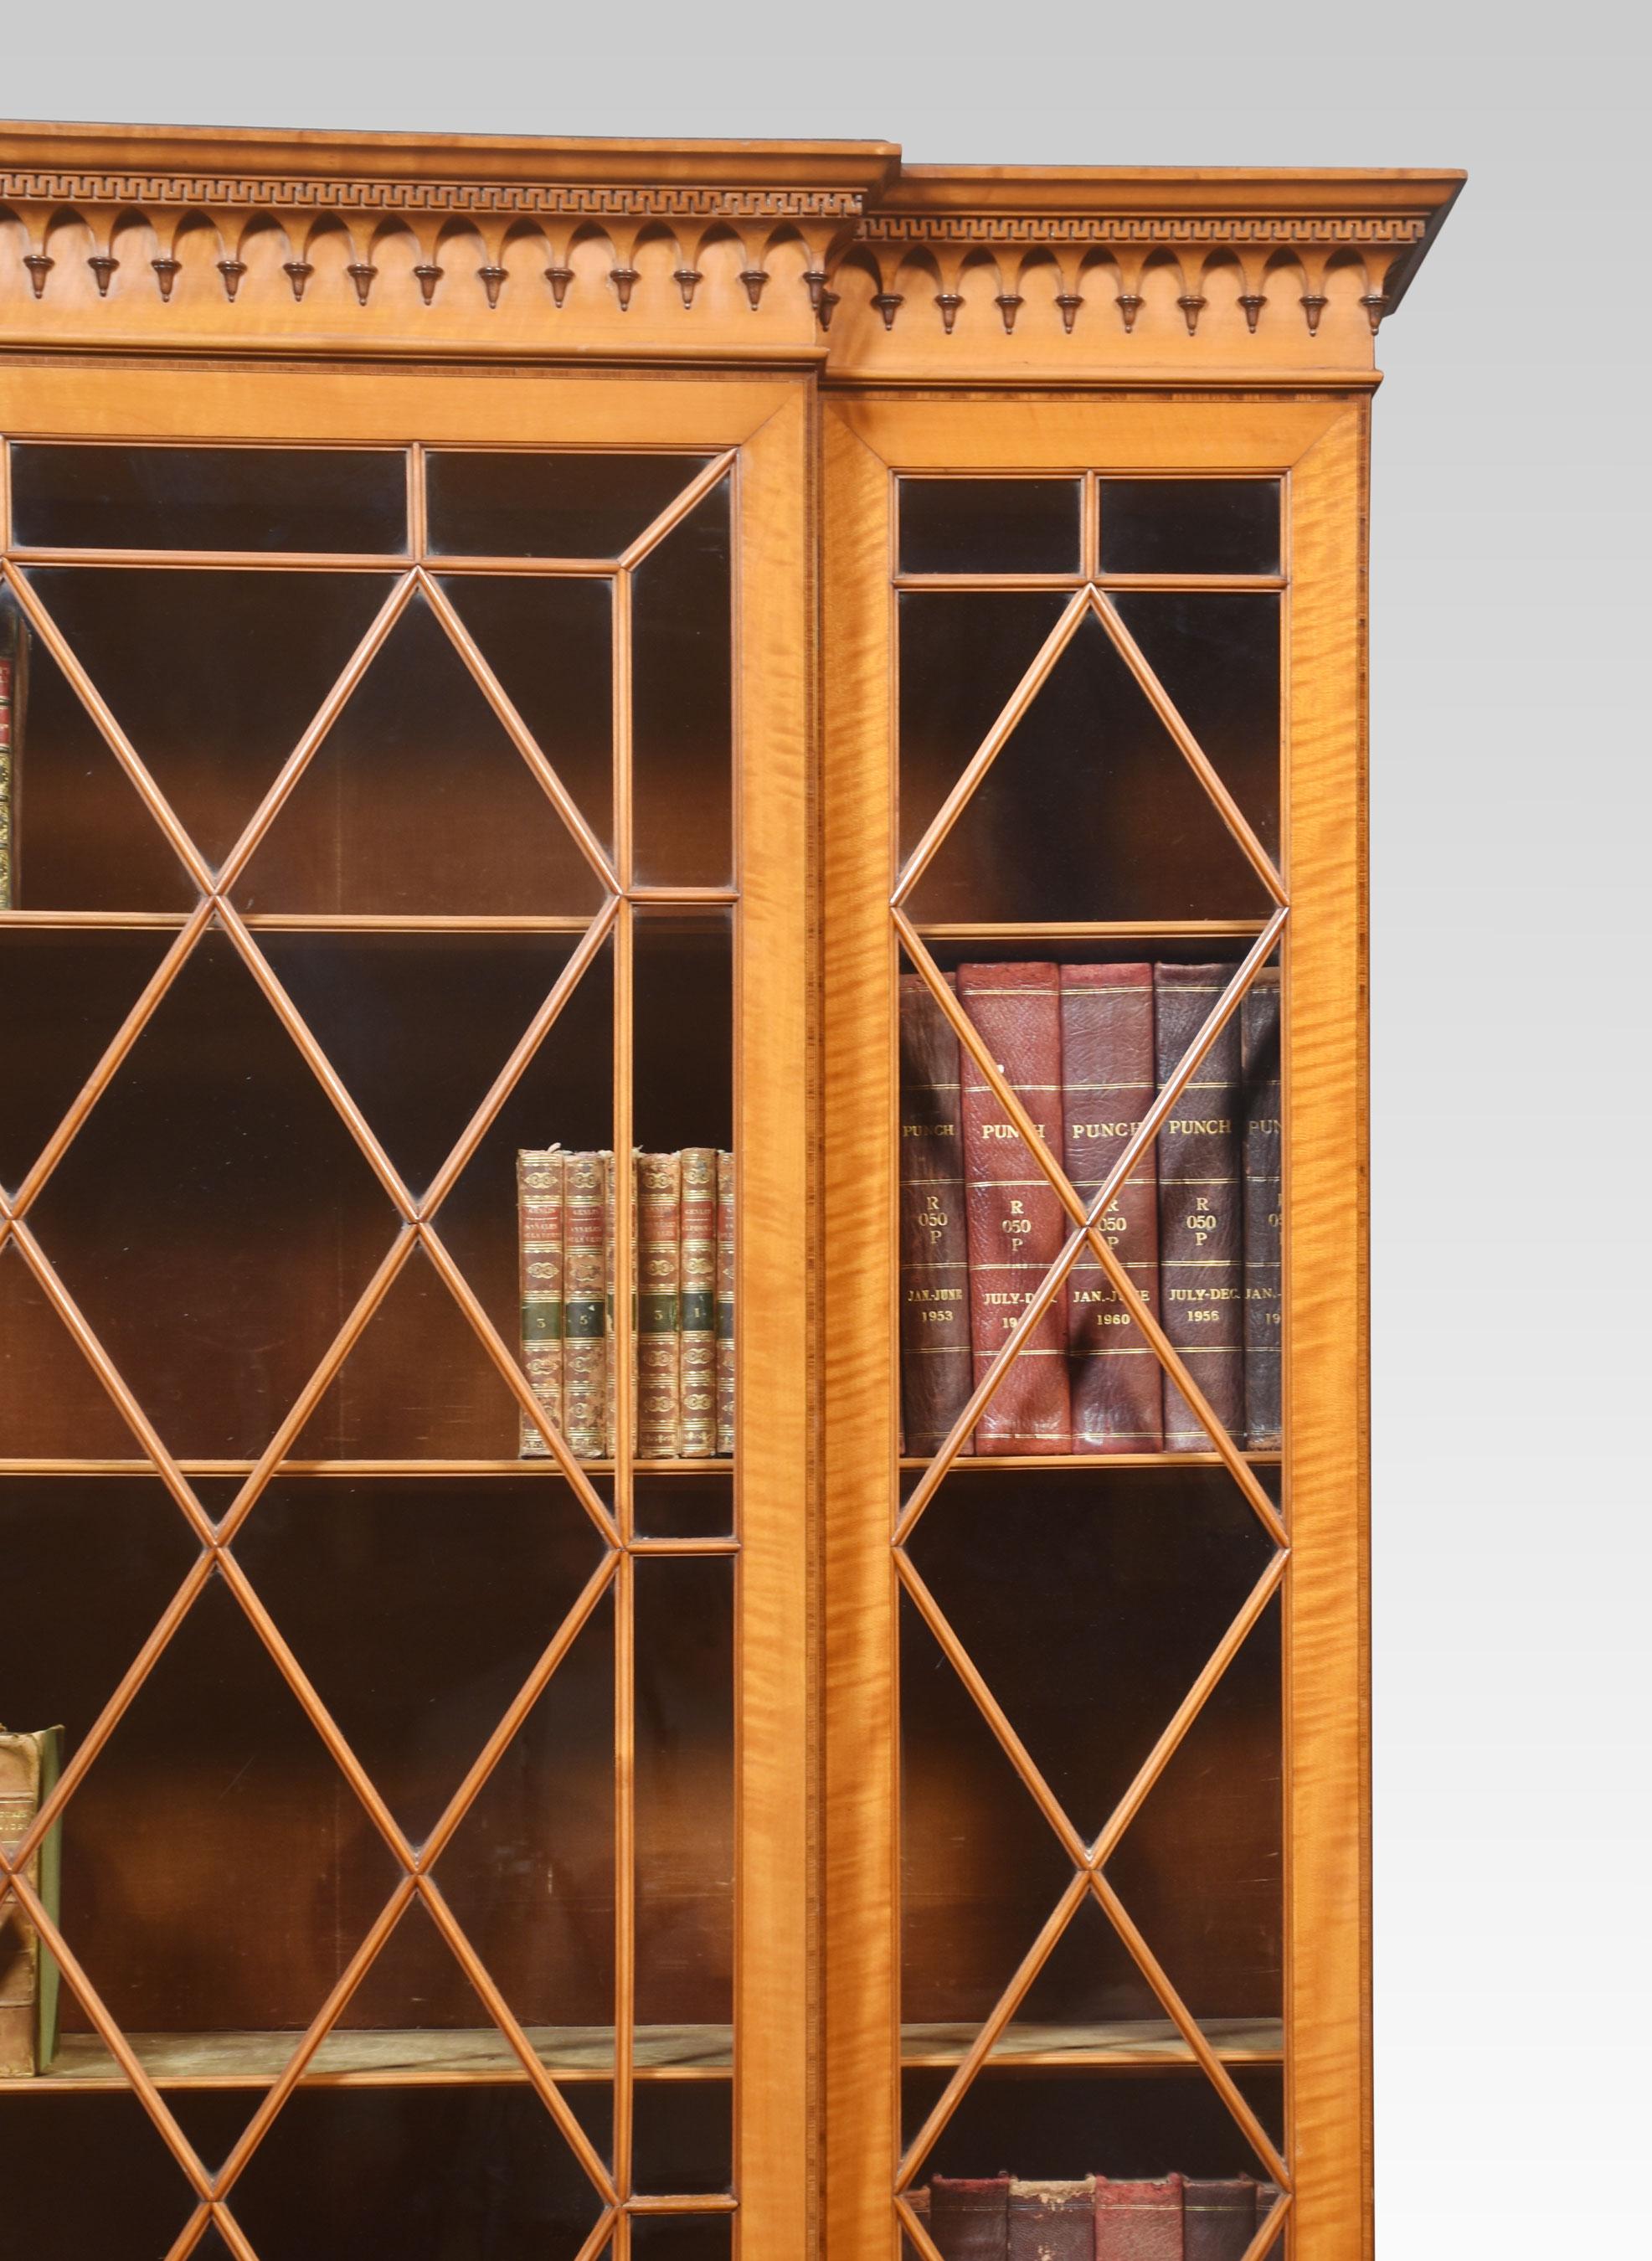 Sheraton-Revival-Schrank aus satiniertem Holz, mit geschnitztem Gesims über großen zentralen verglasten Astragal-Türen, flankiert von zwei weiteren verglasten Platten. Die zentrale Tür lässt sich öffnen und gibt den Blick auf gepolsterte,